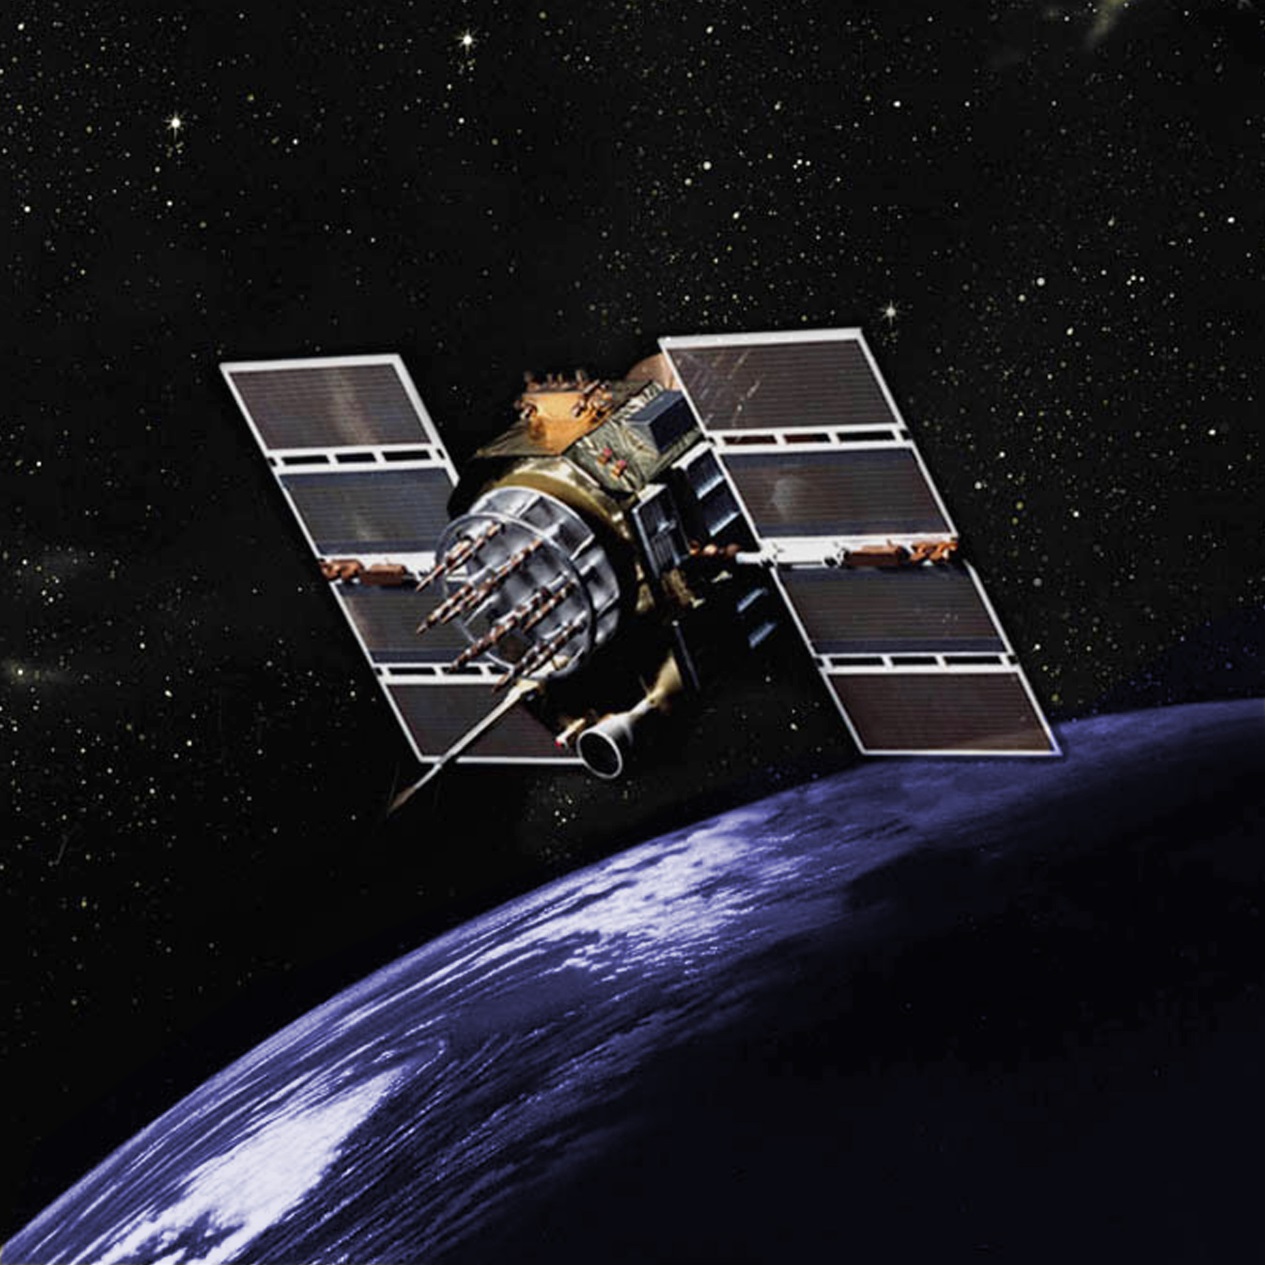 Provoz GPS systému zajišťuje sestava družic na oběžné dráze. Systém by nefungoval bez využití speciální i obecné teorie relativity (GPS.gov).